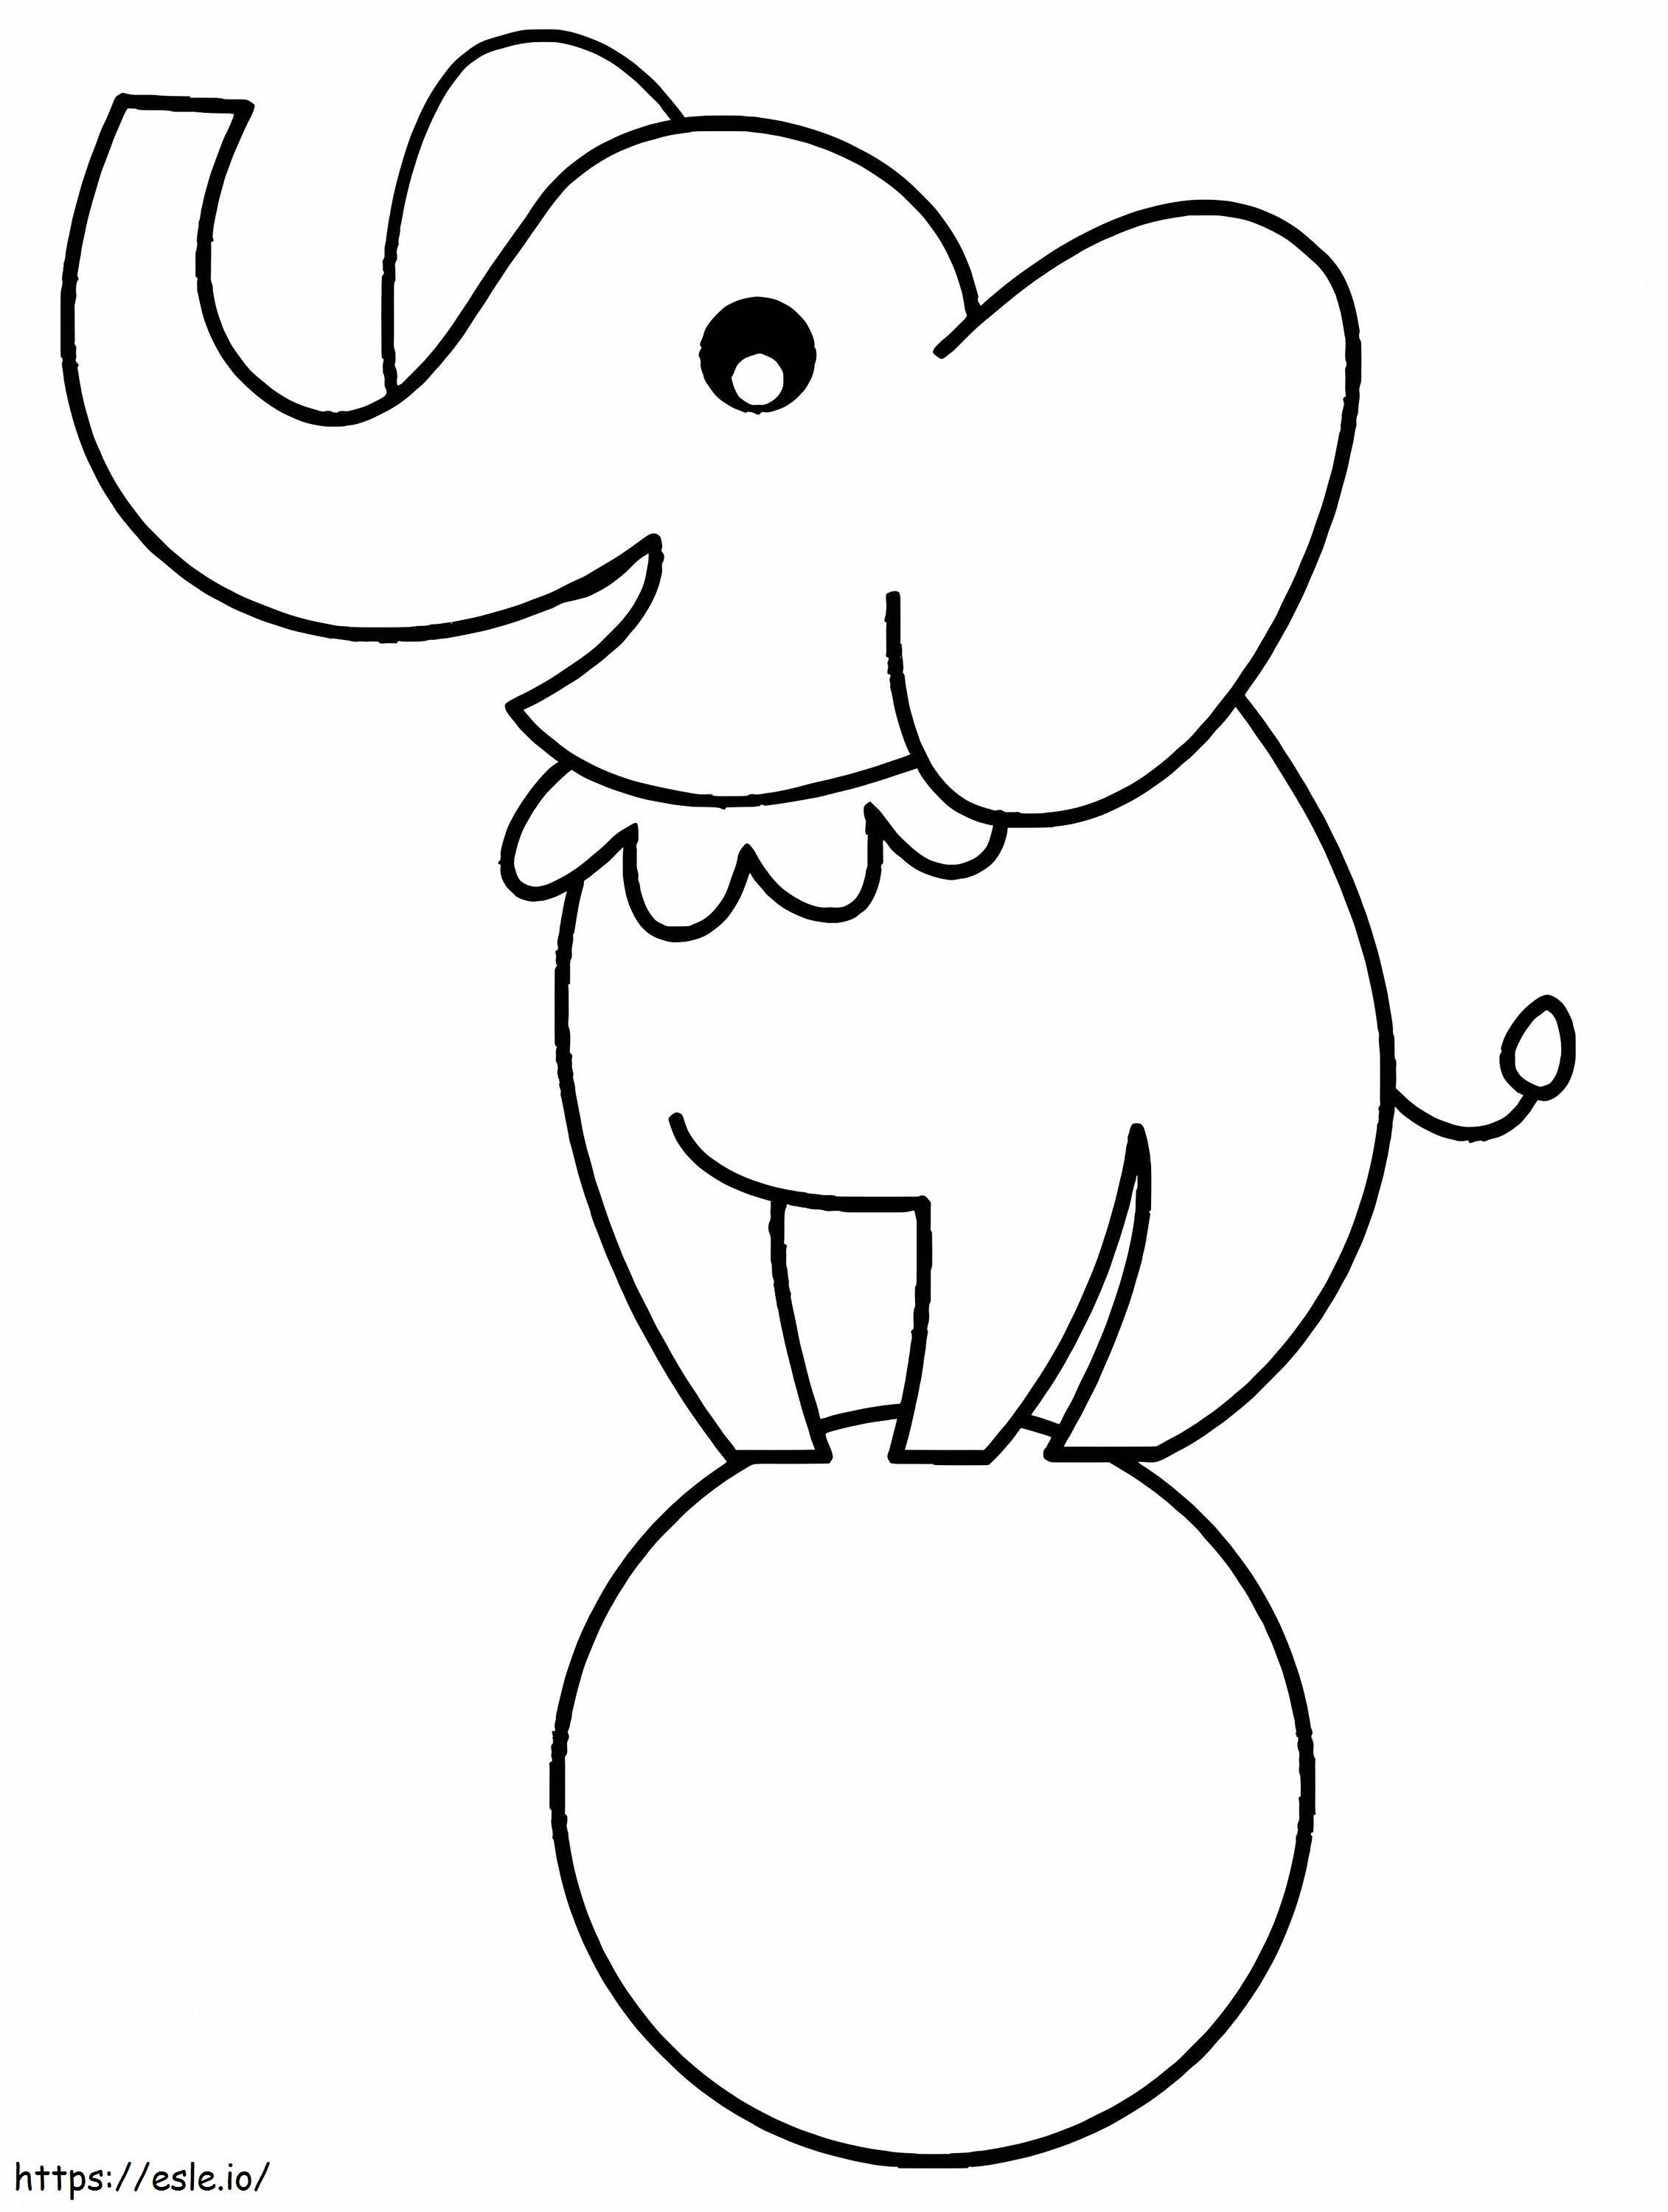 Elefante carino per bambini di 1 anno da colorare